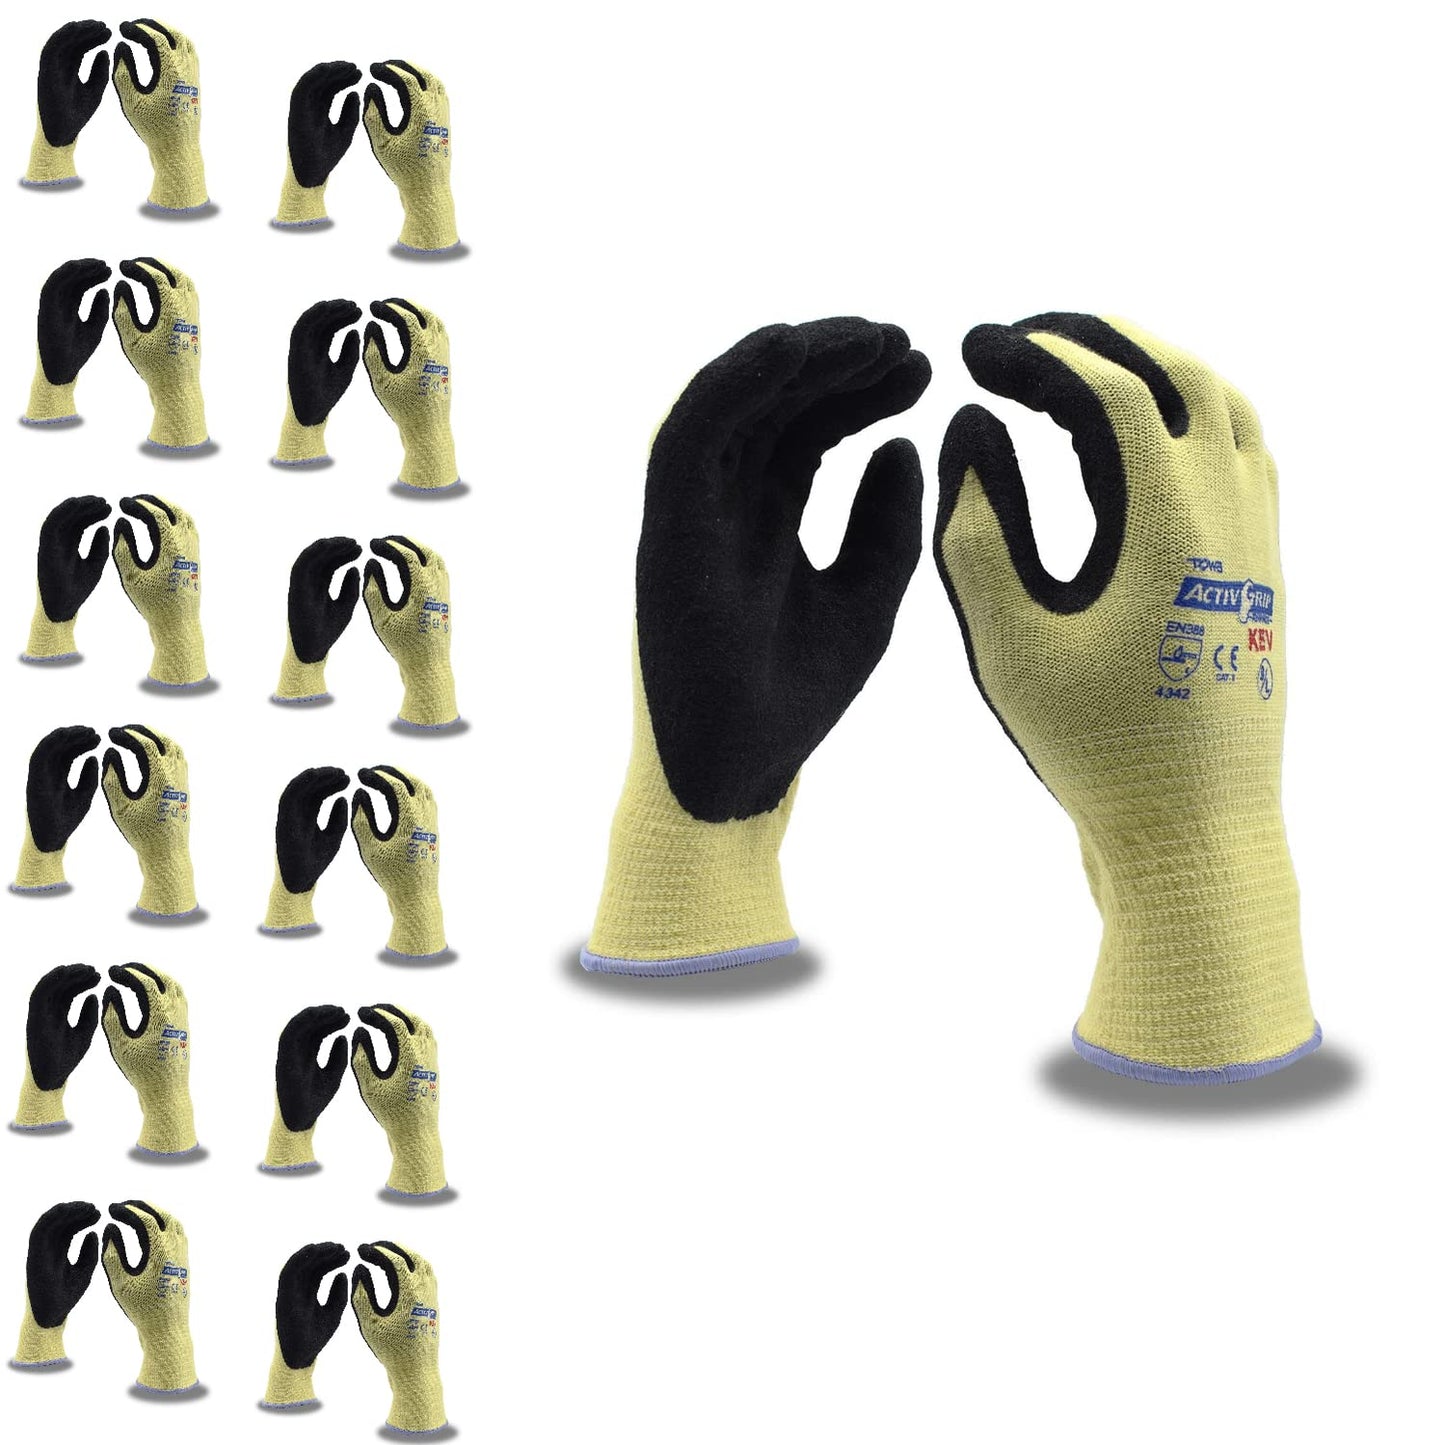 Nitrile/Kevlar ActivGrip Gloves, 12-Pack